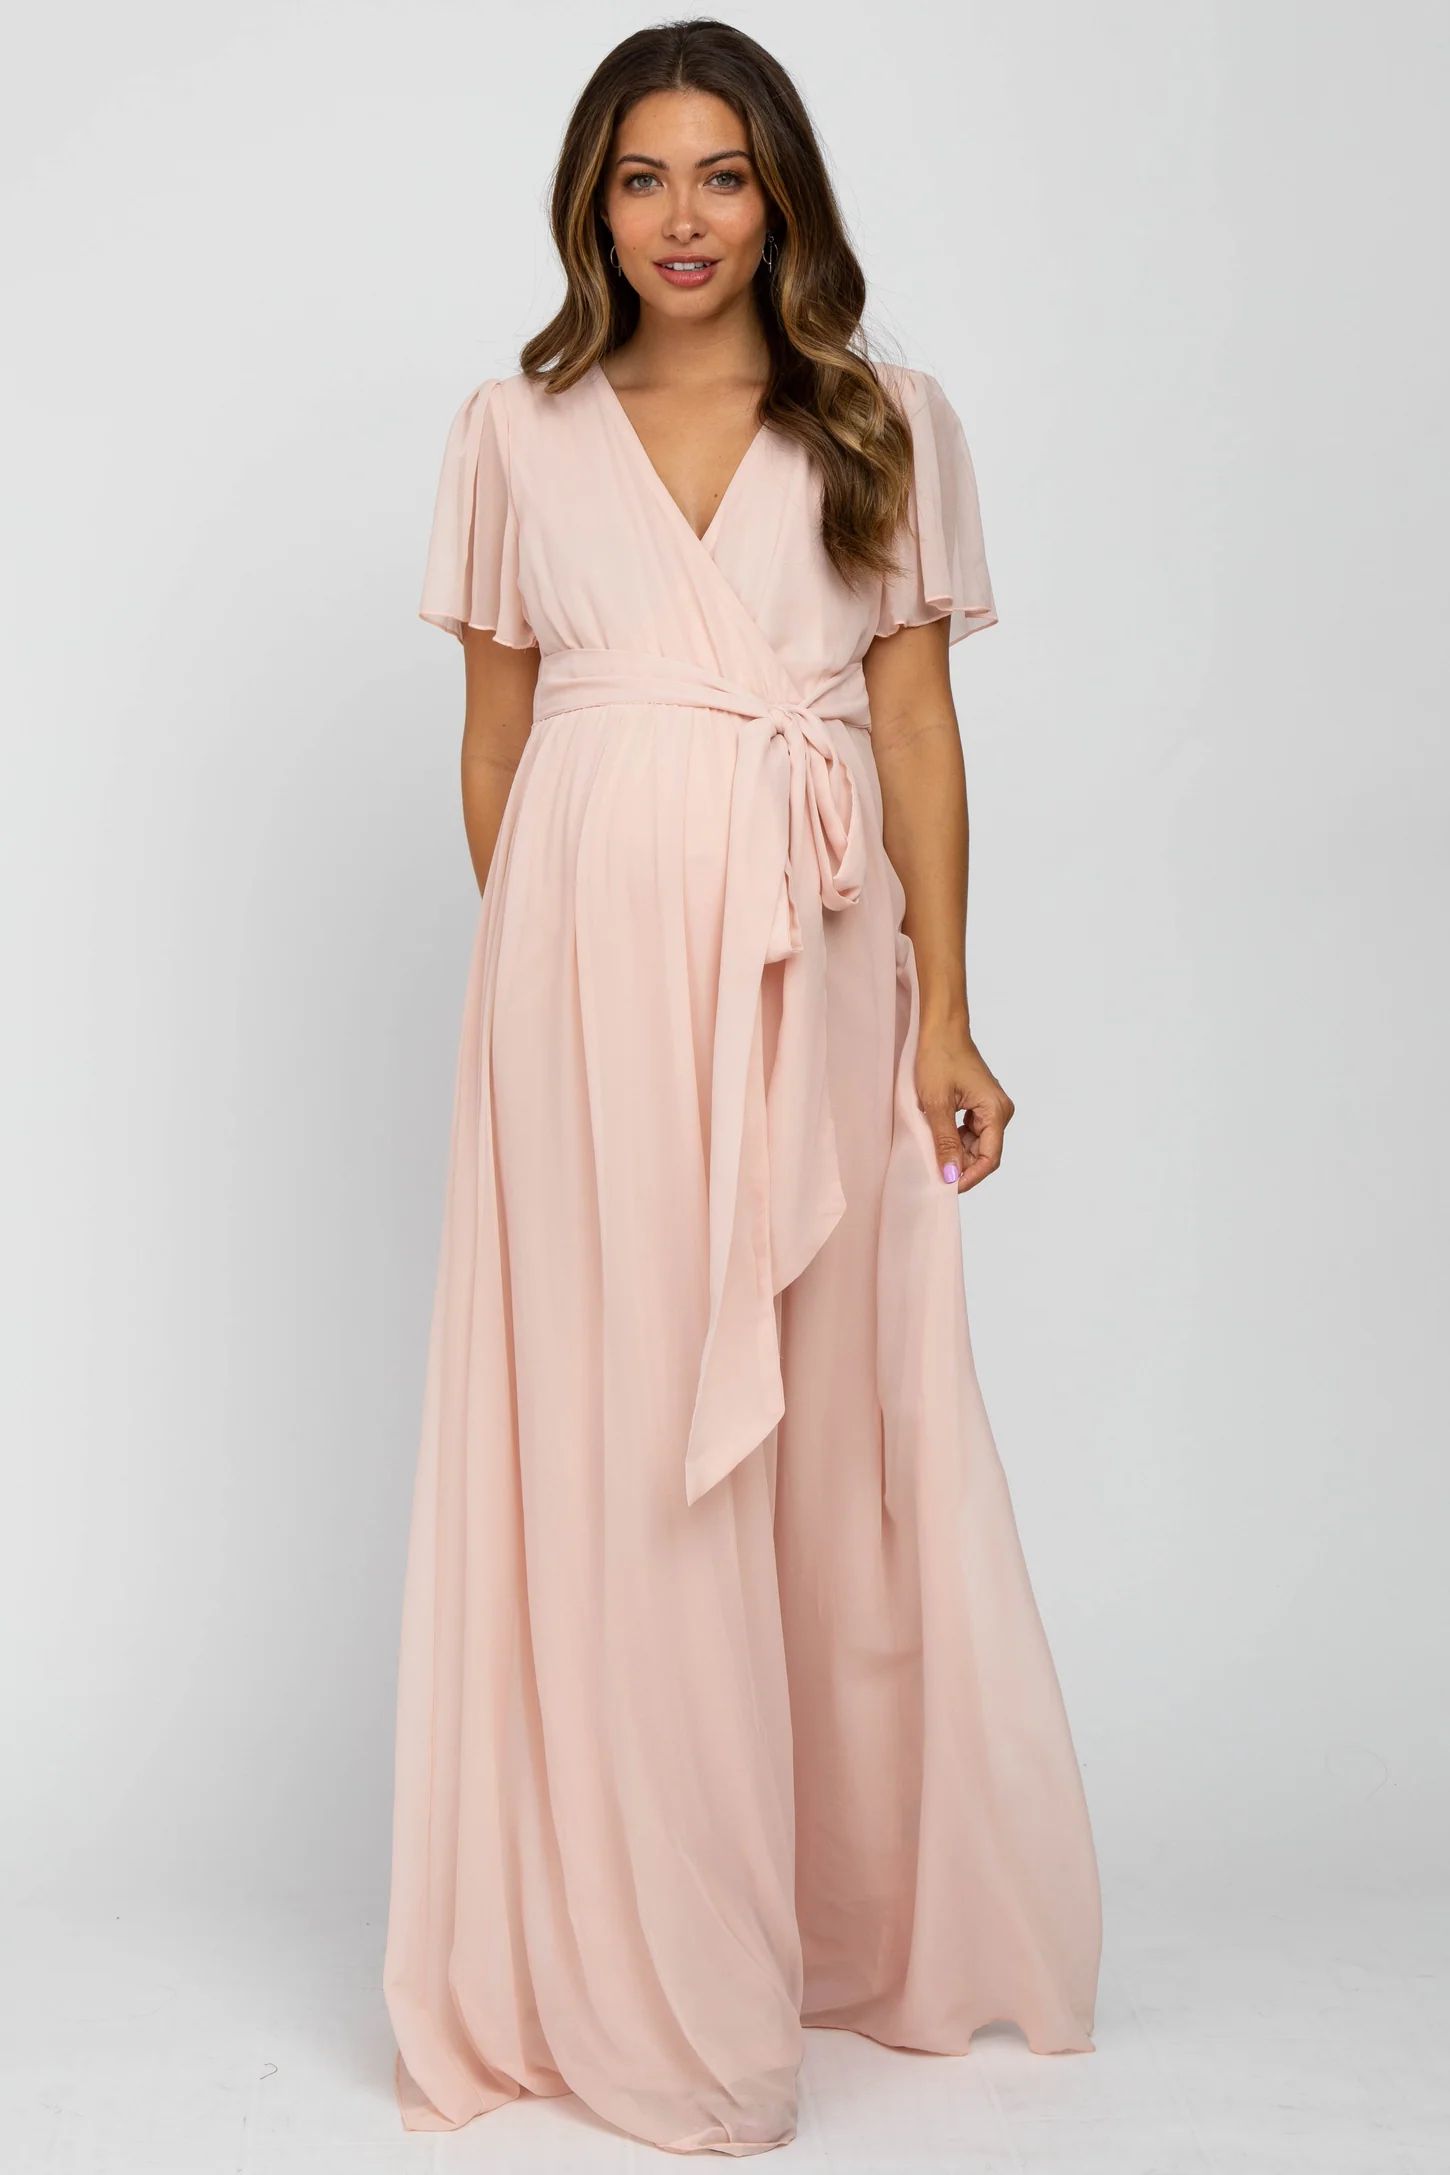 Light Pink Chiffon Short Sleeve Maternity Maxi Dress | PinkBlush Maternity